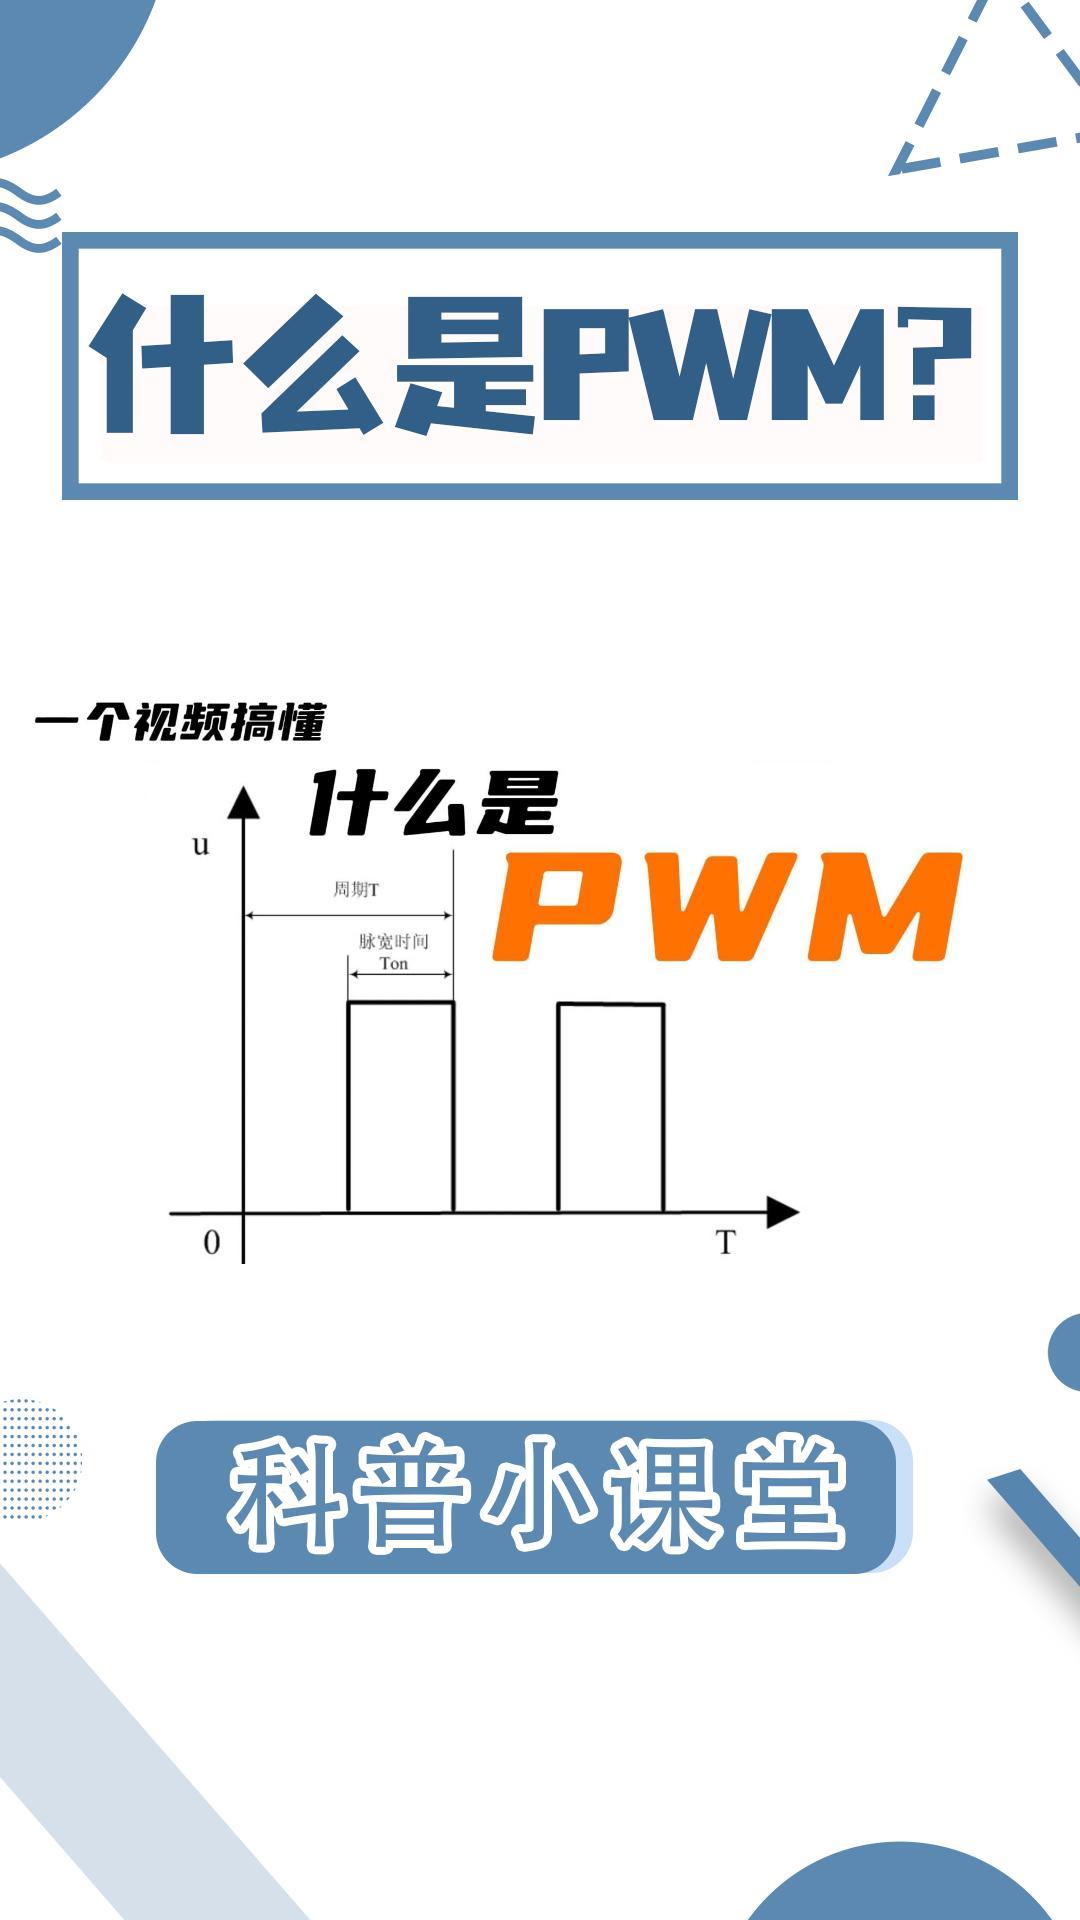 一看就懂|什么是PWM-脉冲宽度调制？#单片机 #PWM #电路知识 #硬件工程师 #占空比 #电工 